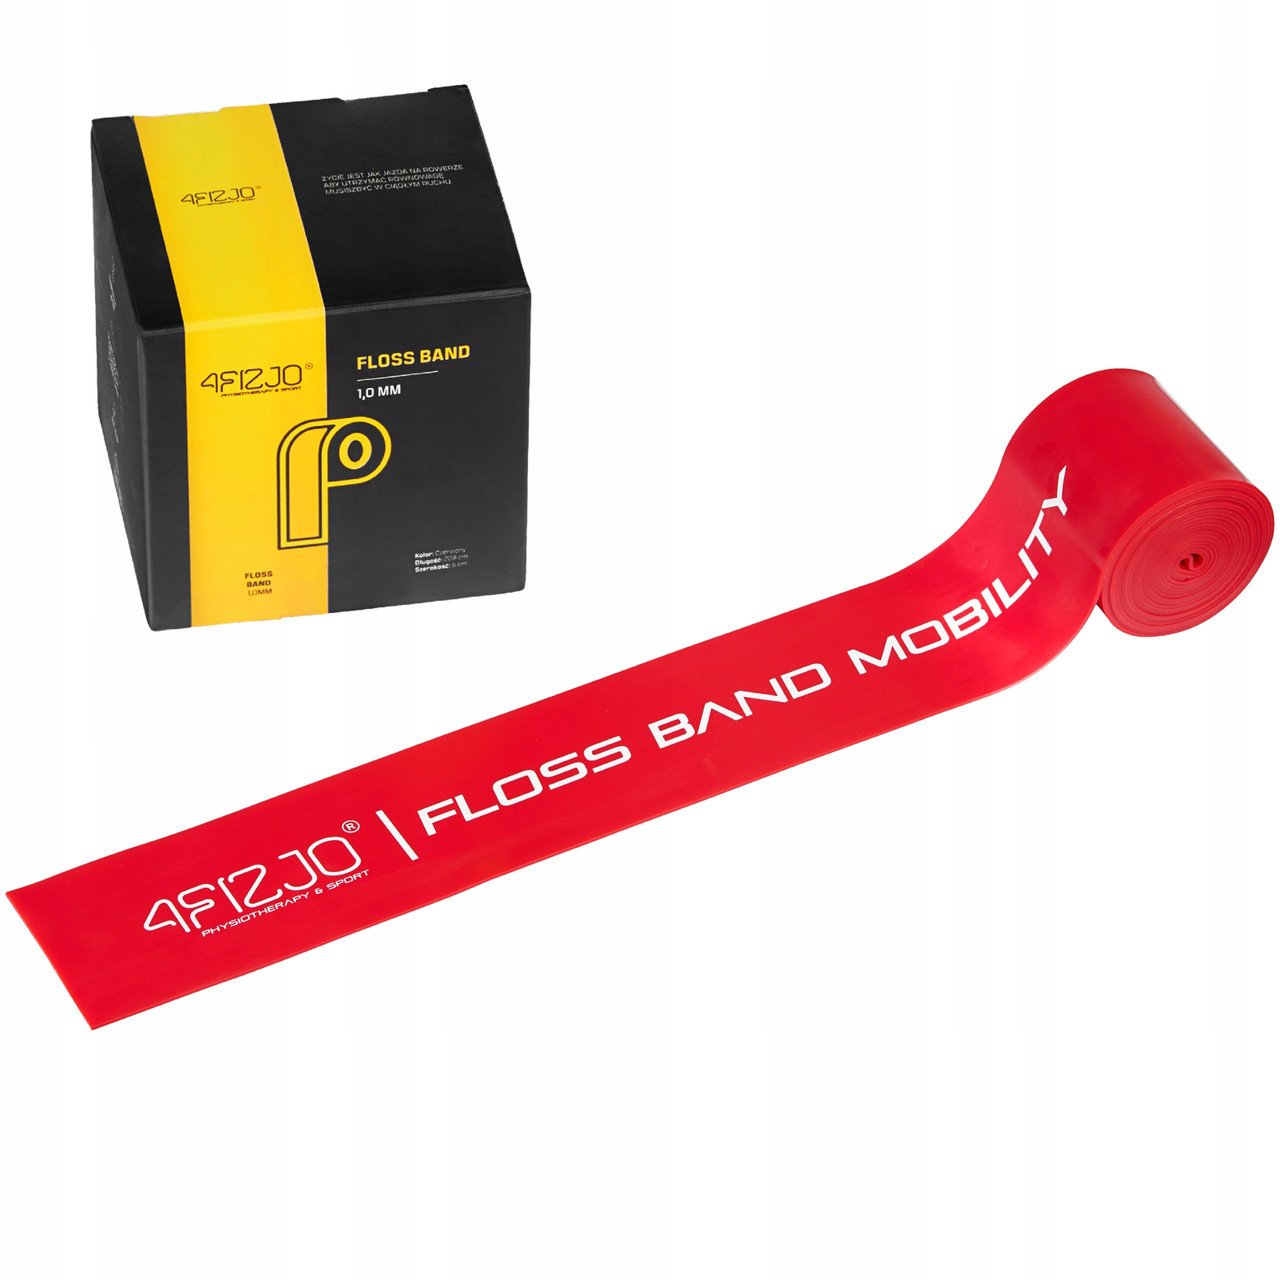 Стрічка компресійна для флосингу 4FIZJO Floss Band 207 x 5 x 0.1 см 4FJ0519,  ml, 4FIZJO. Fitness Products. 